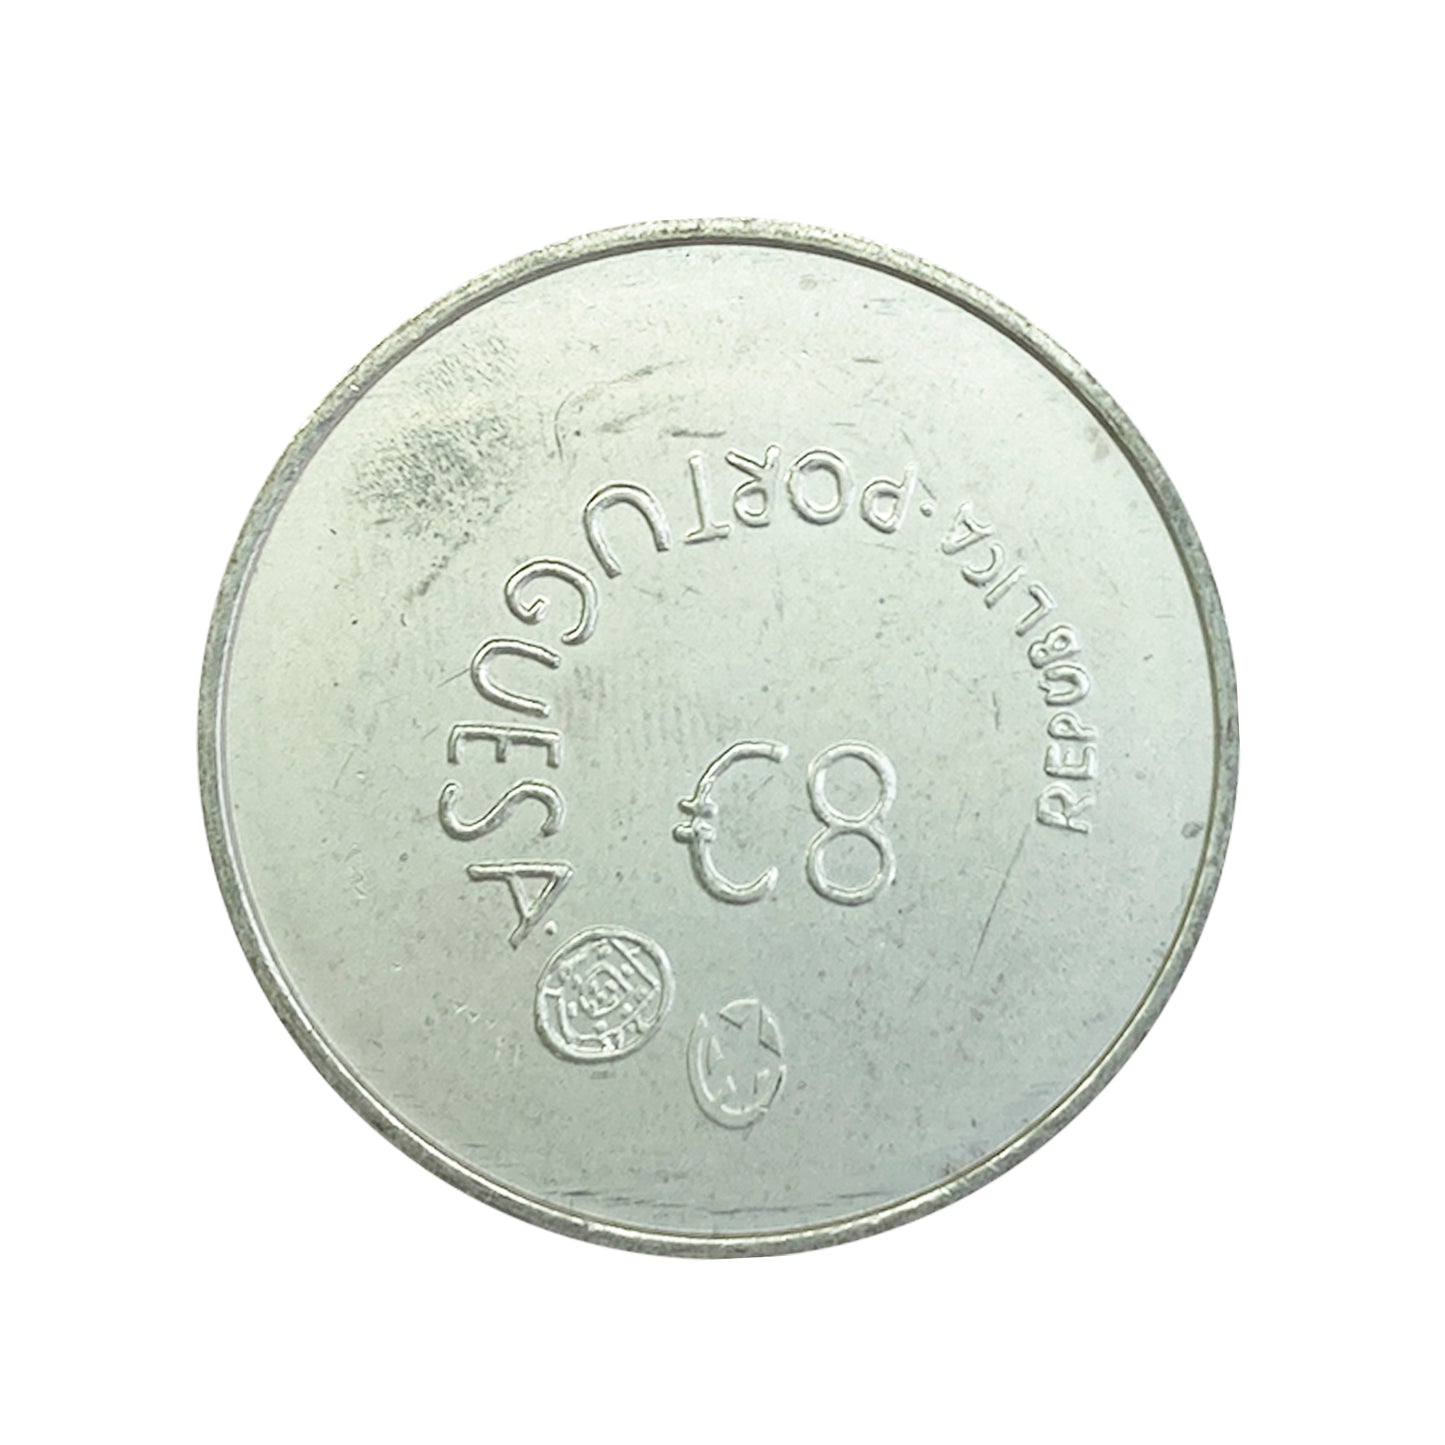 Portugal - Moneda 8 euros en plata 2006 - Enrique el Navegante